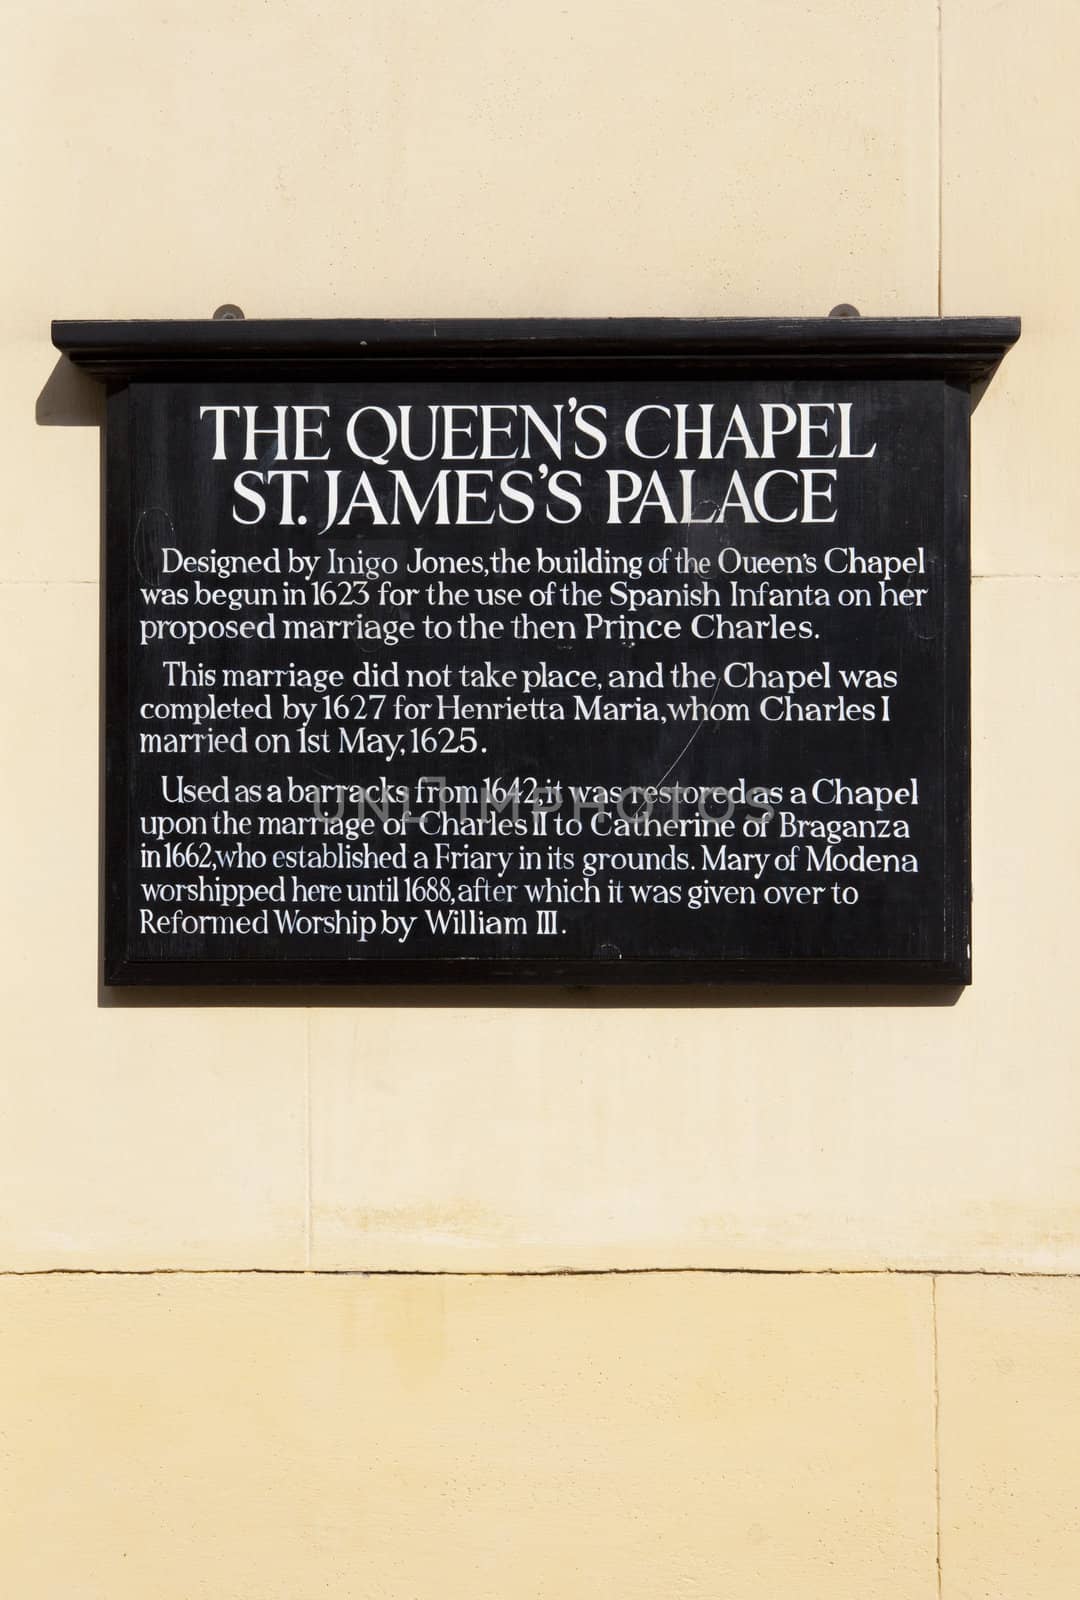 Queen's Chapel in London by chrisdorney